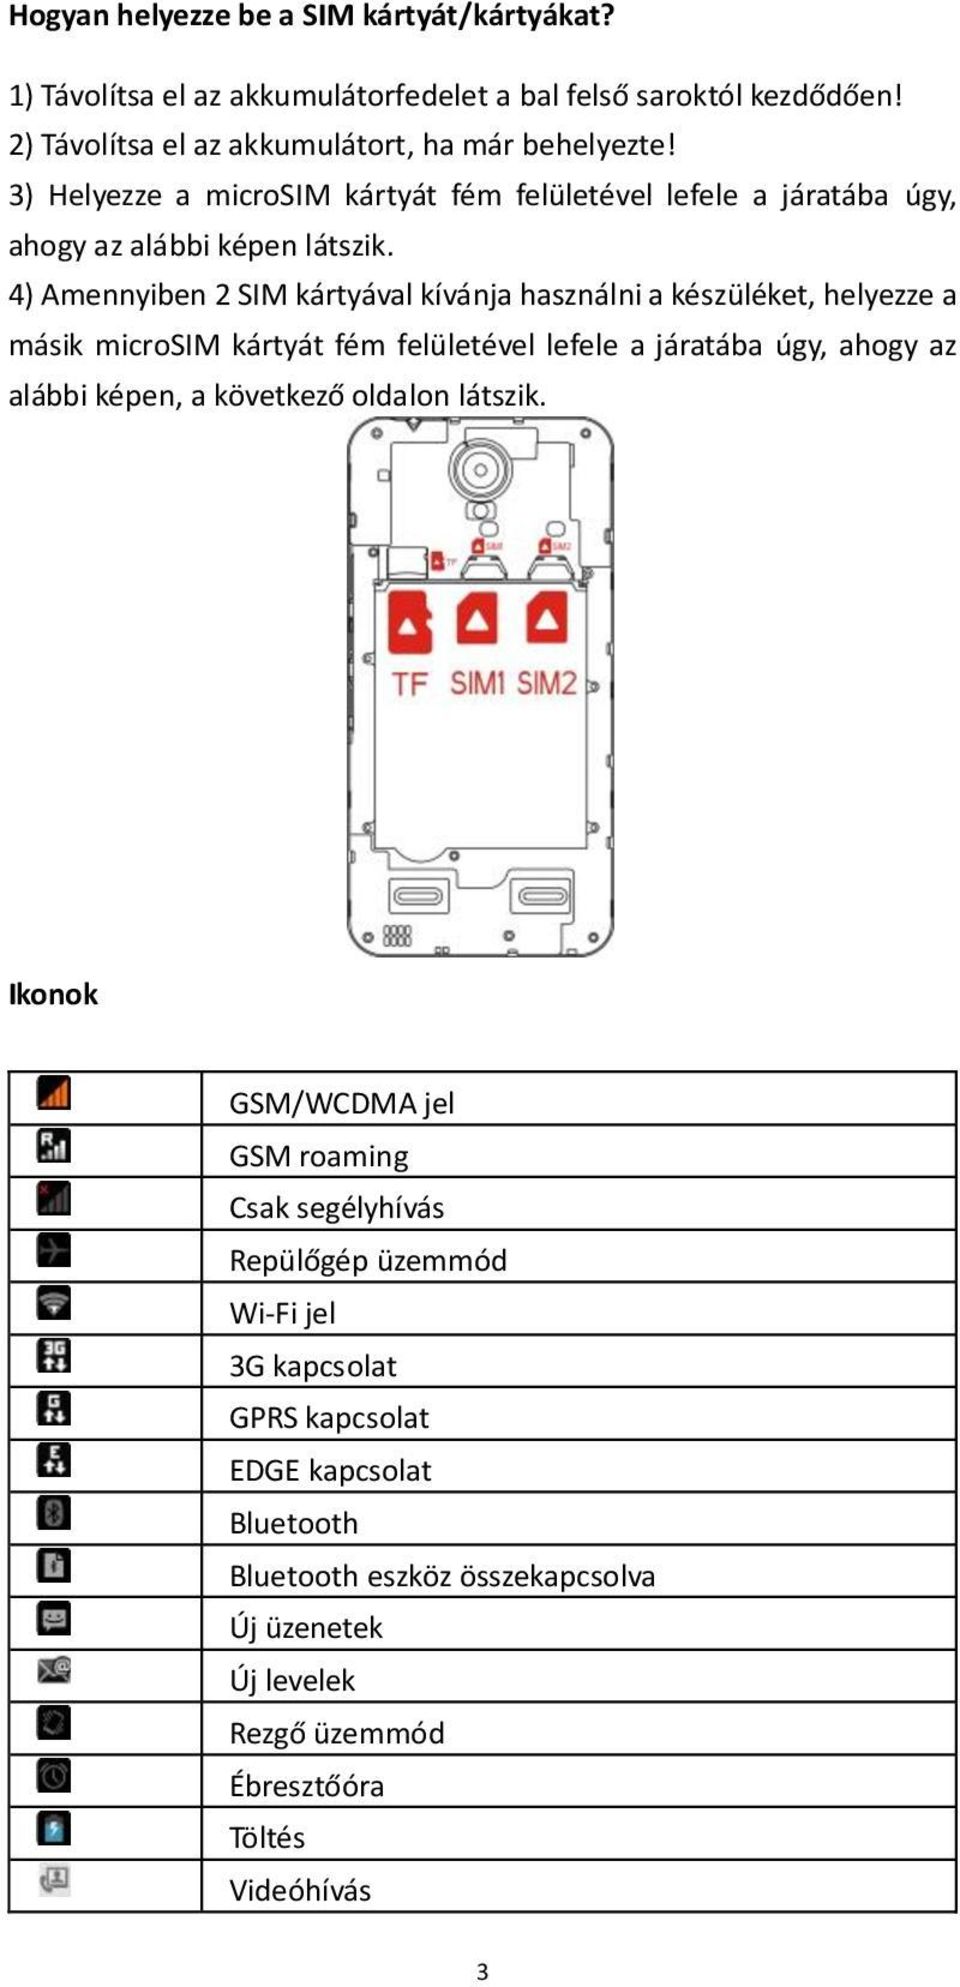 4) Amennyiben 2 SIM kártyával kívánja használni a készüléket, helyezze a másik microsim kártyát fém felületével lefele a járatába úgy, ahogy az alábbi képen, a következő